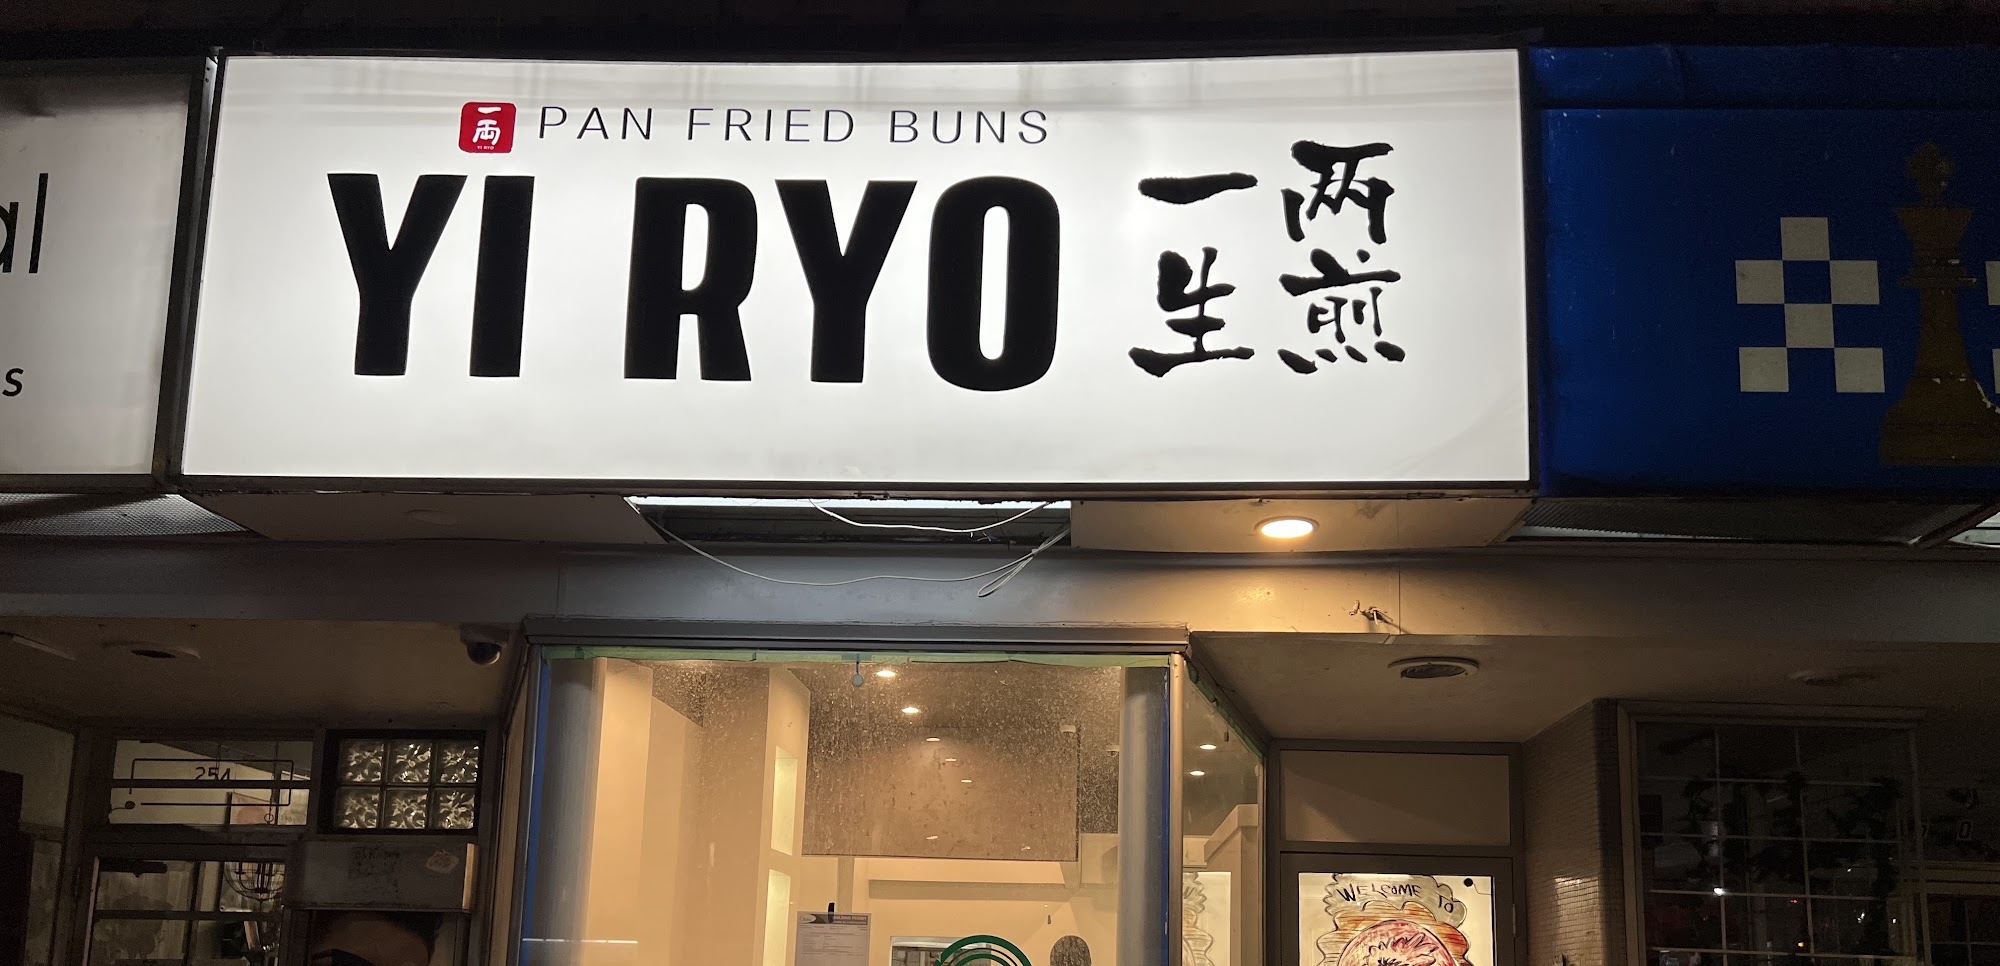 YI RYO pan fried buns 一两生煎